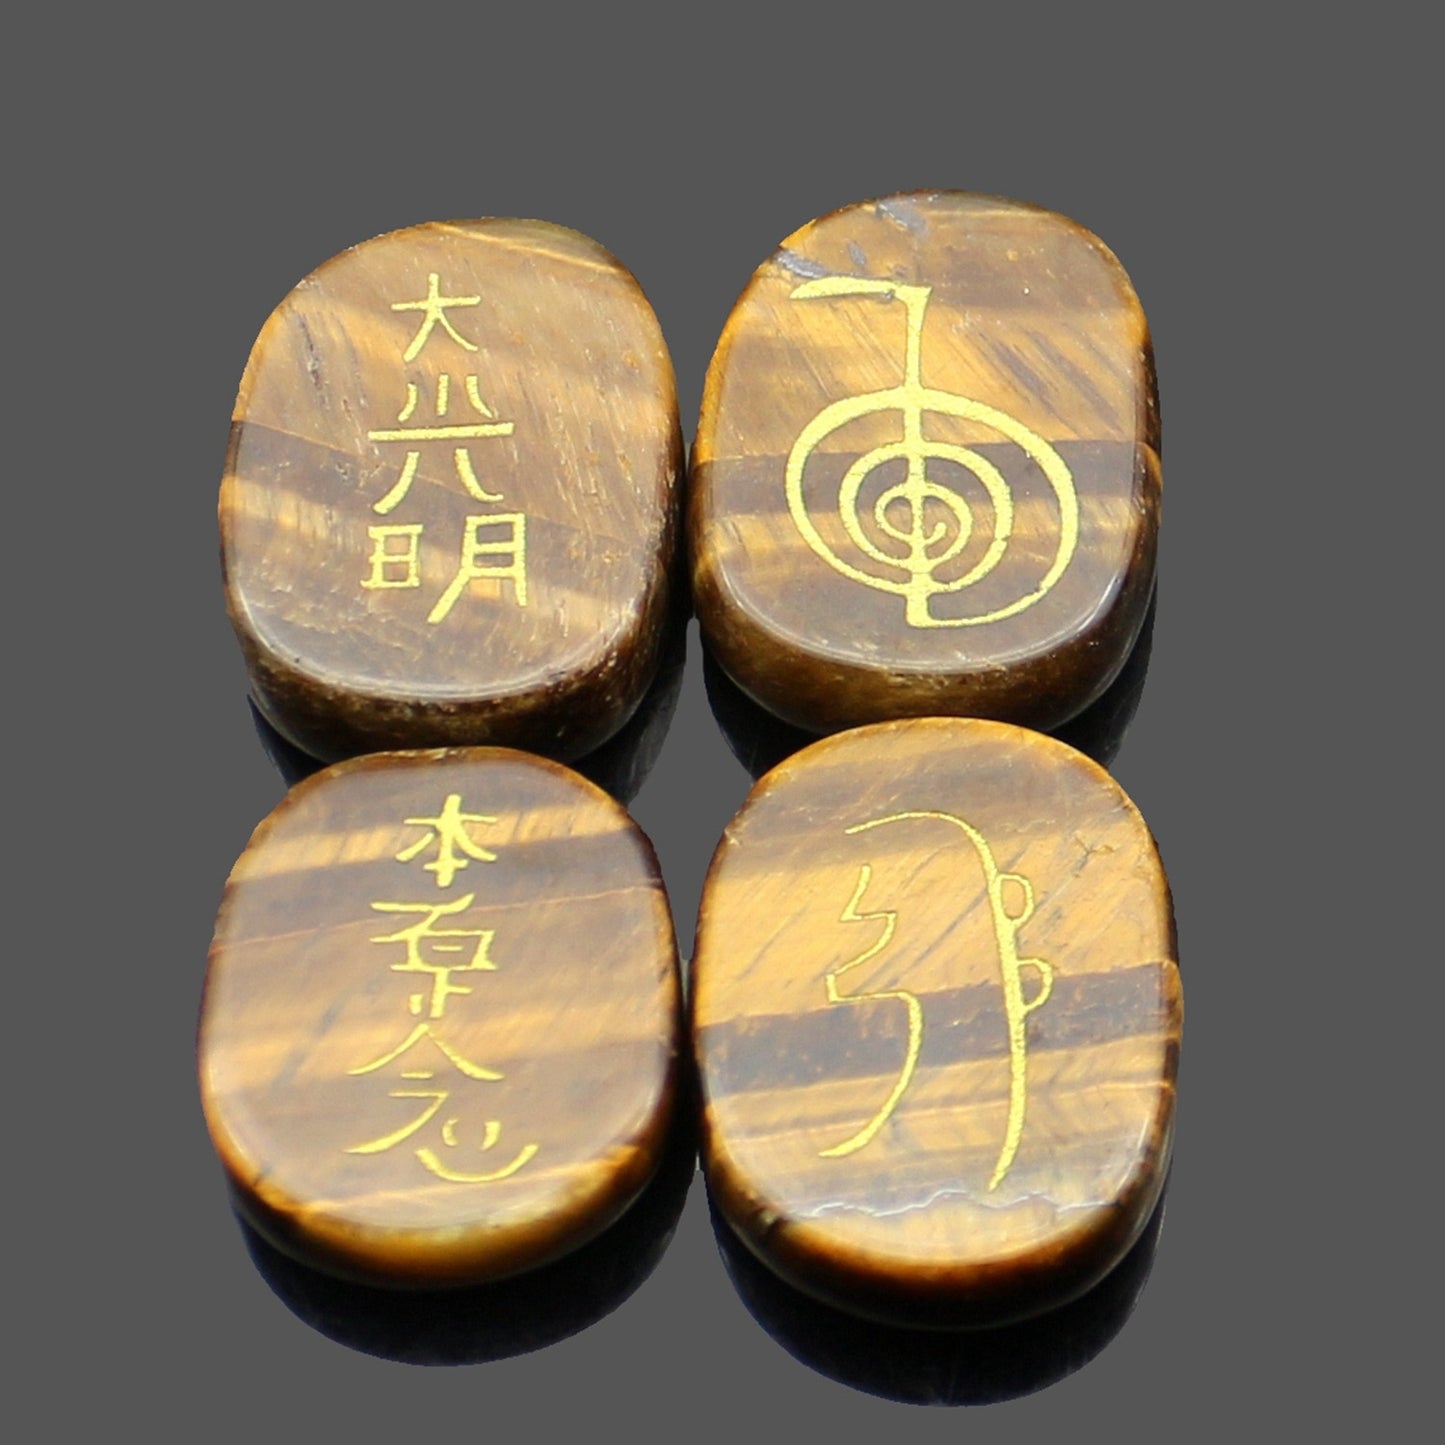 four reiki symbol engraved stones chokurei seihiki honshazeshonen daikomyo  (power, emotion, distance, higher level or master) tiger eye